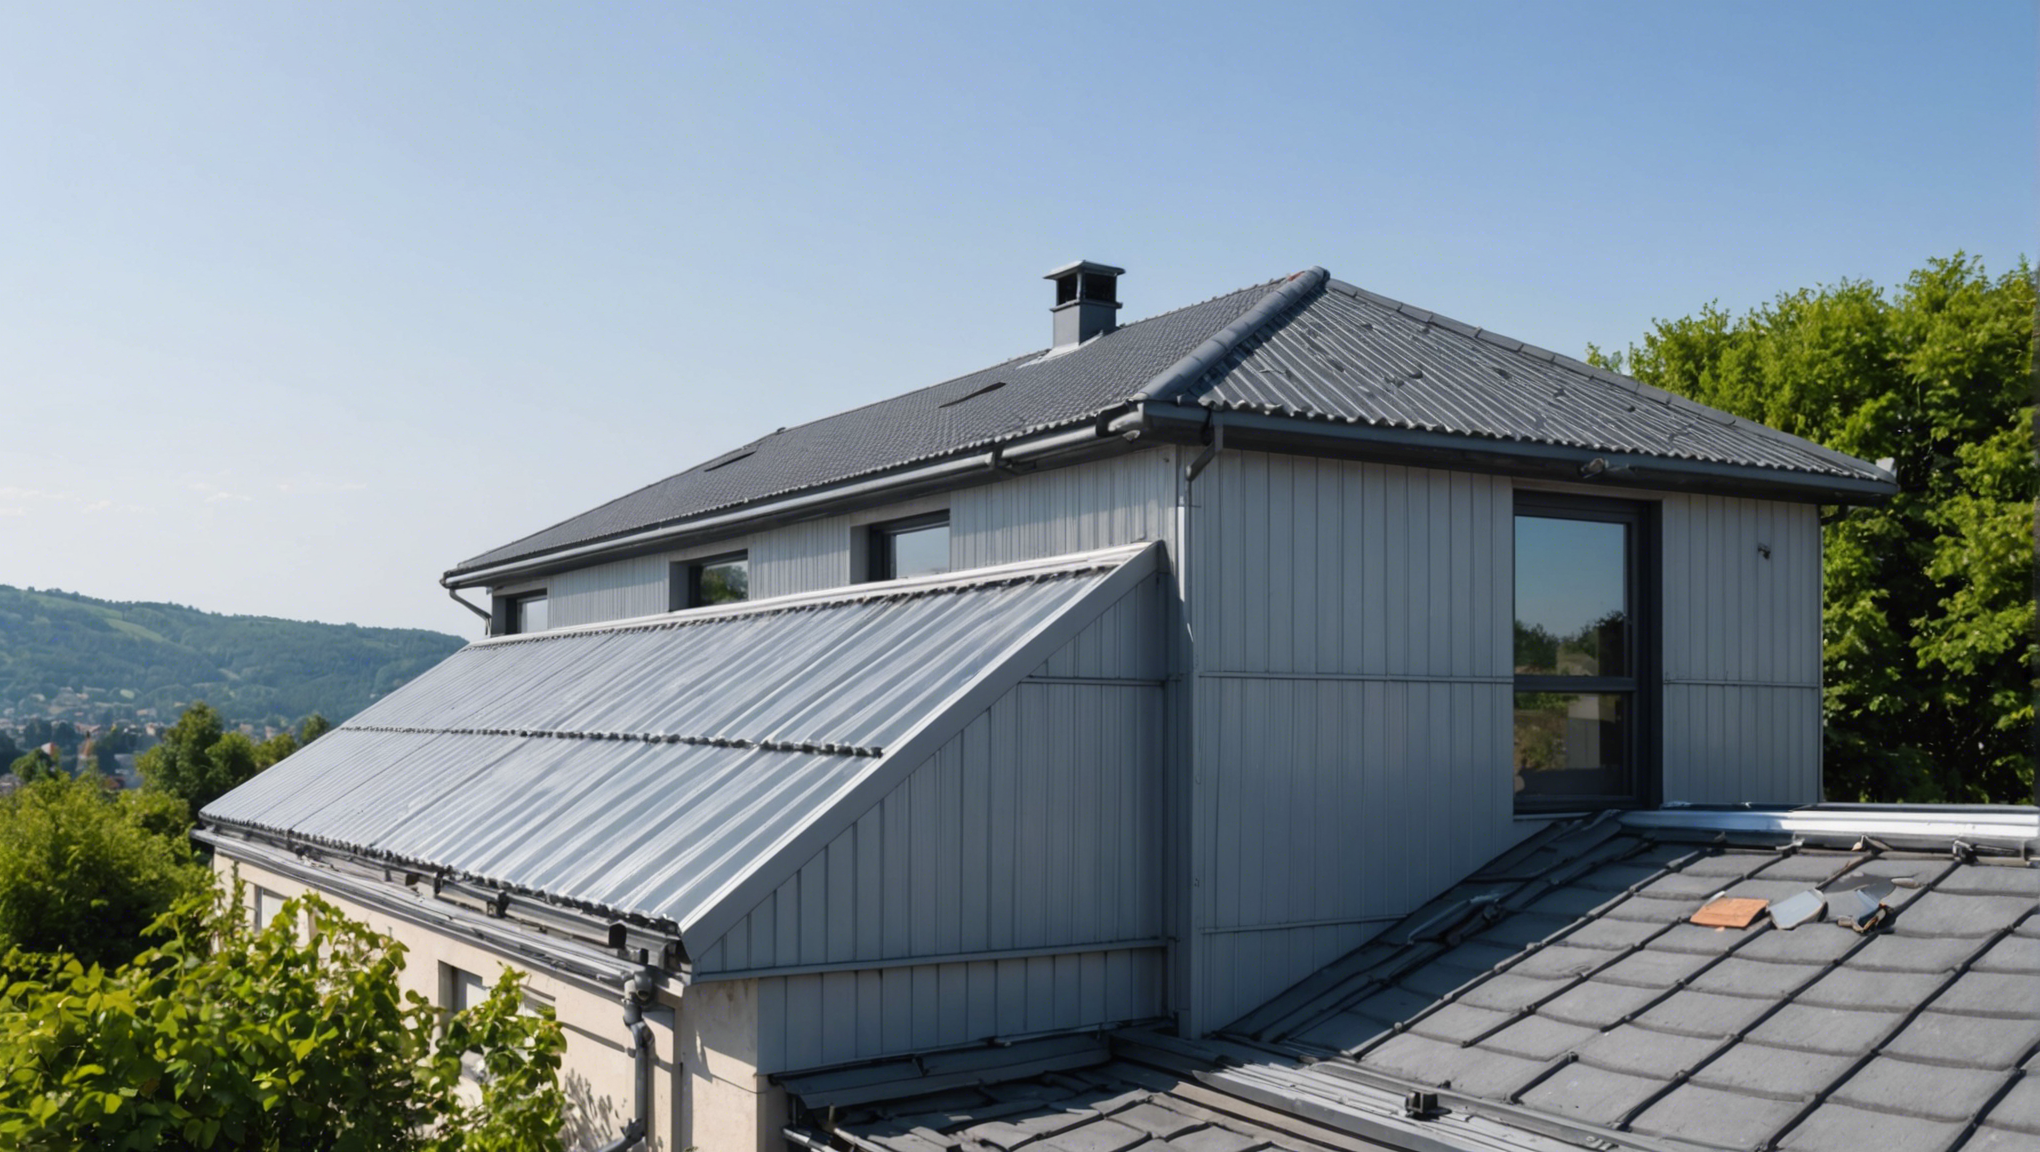 découvrez les avantages d'une toiture en bac acier isolé et comment elle peut améliorer l'efficacité énergétique de votre bâtiment. consultez nos conseils pour faire le bon choix de toiture et optimiser vos dépenses énergétiques.